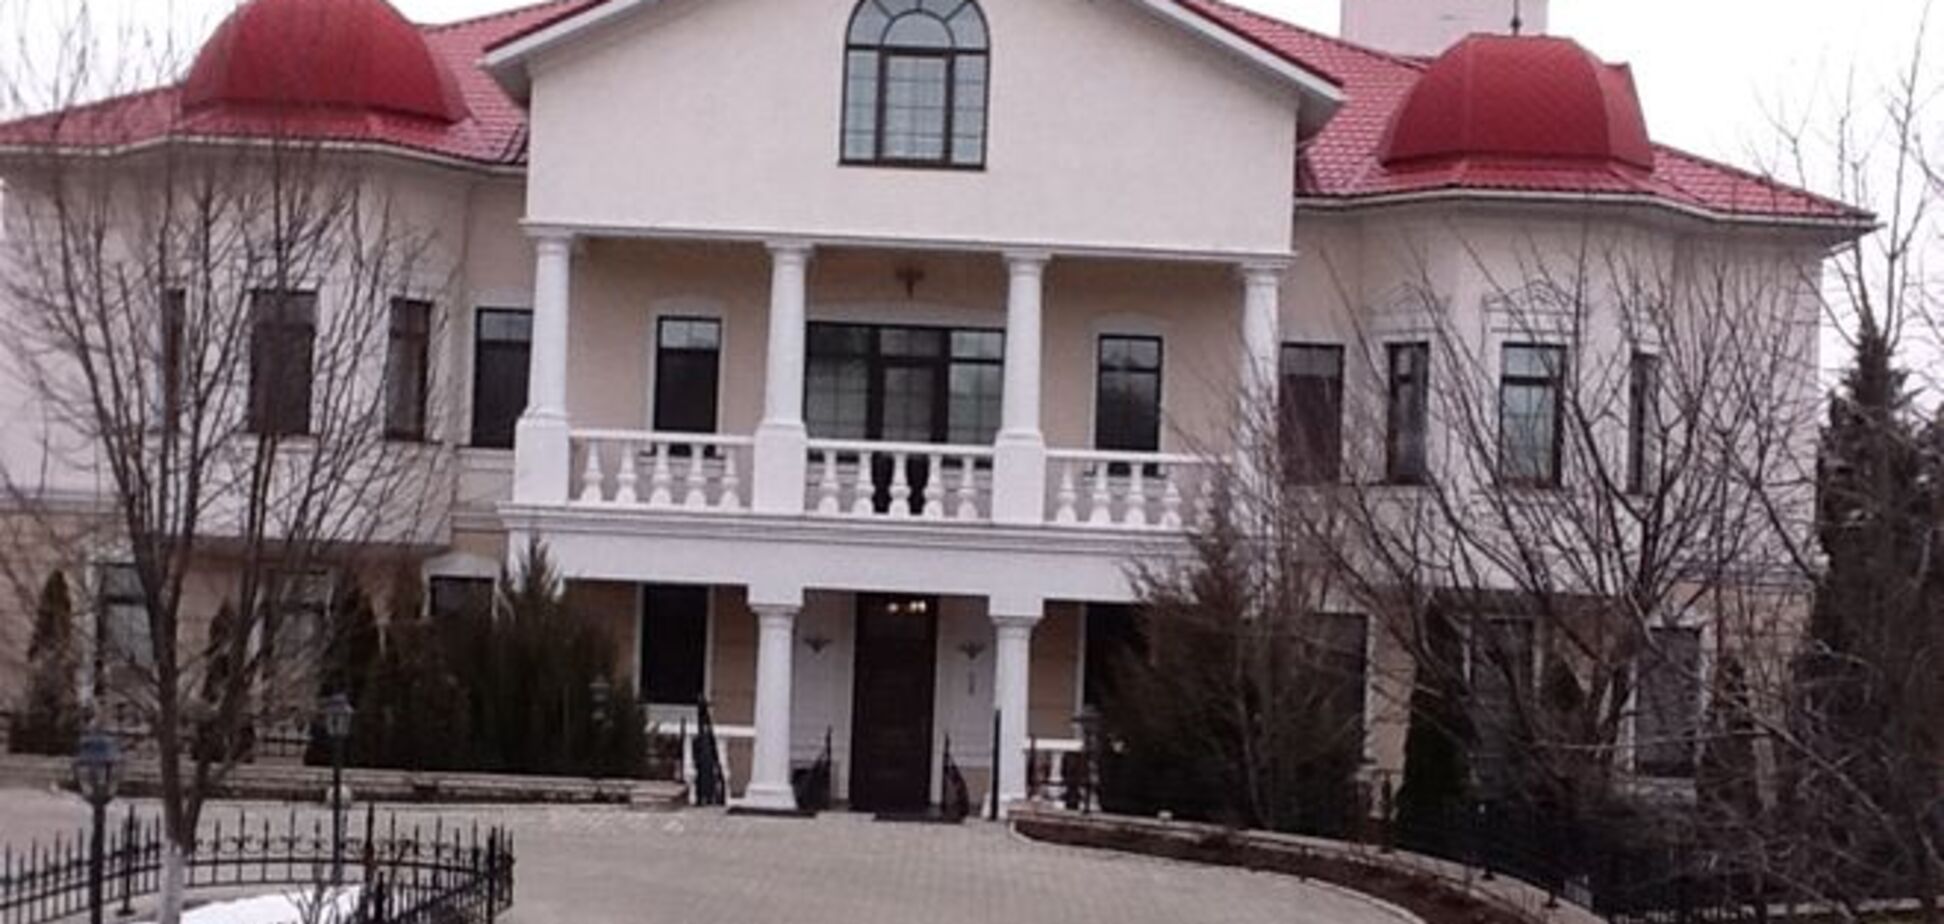 Ефремов пожаловался, что его дом в Луганске ограблен: вынесли многое